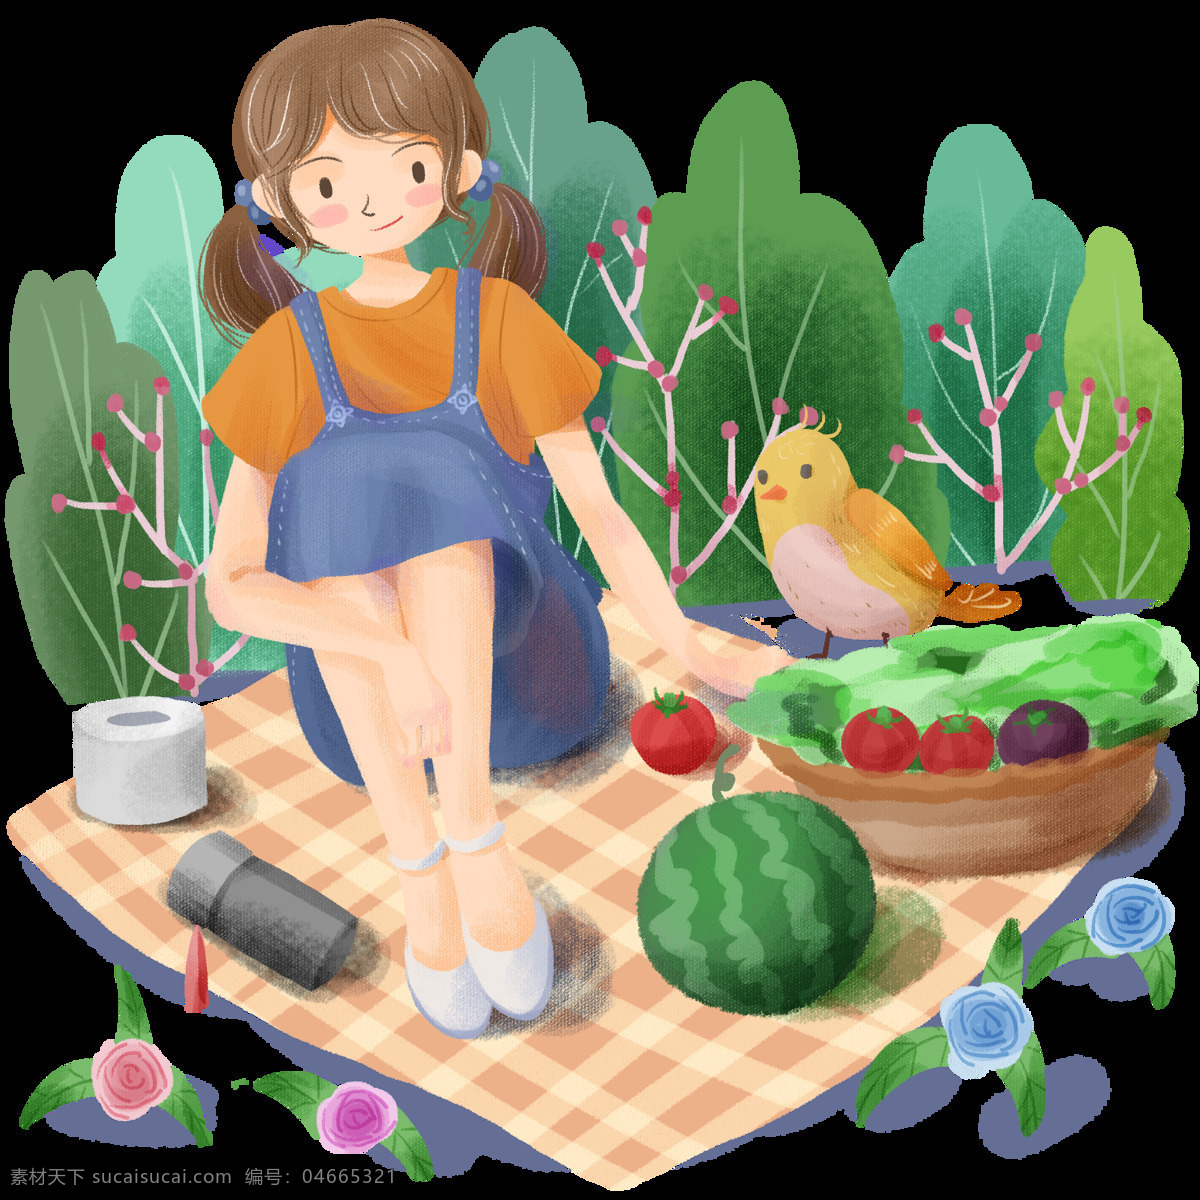 手绘 可爱 卡通 女孩 踏青 郊游 野餐 健康生活 健康 生活 绿色 植物 绿植 少女 蔬菜 西瓜 花朵